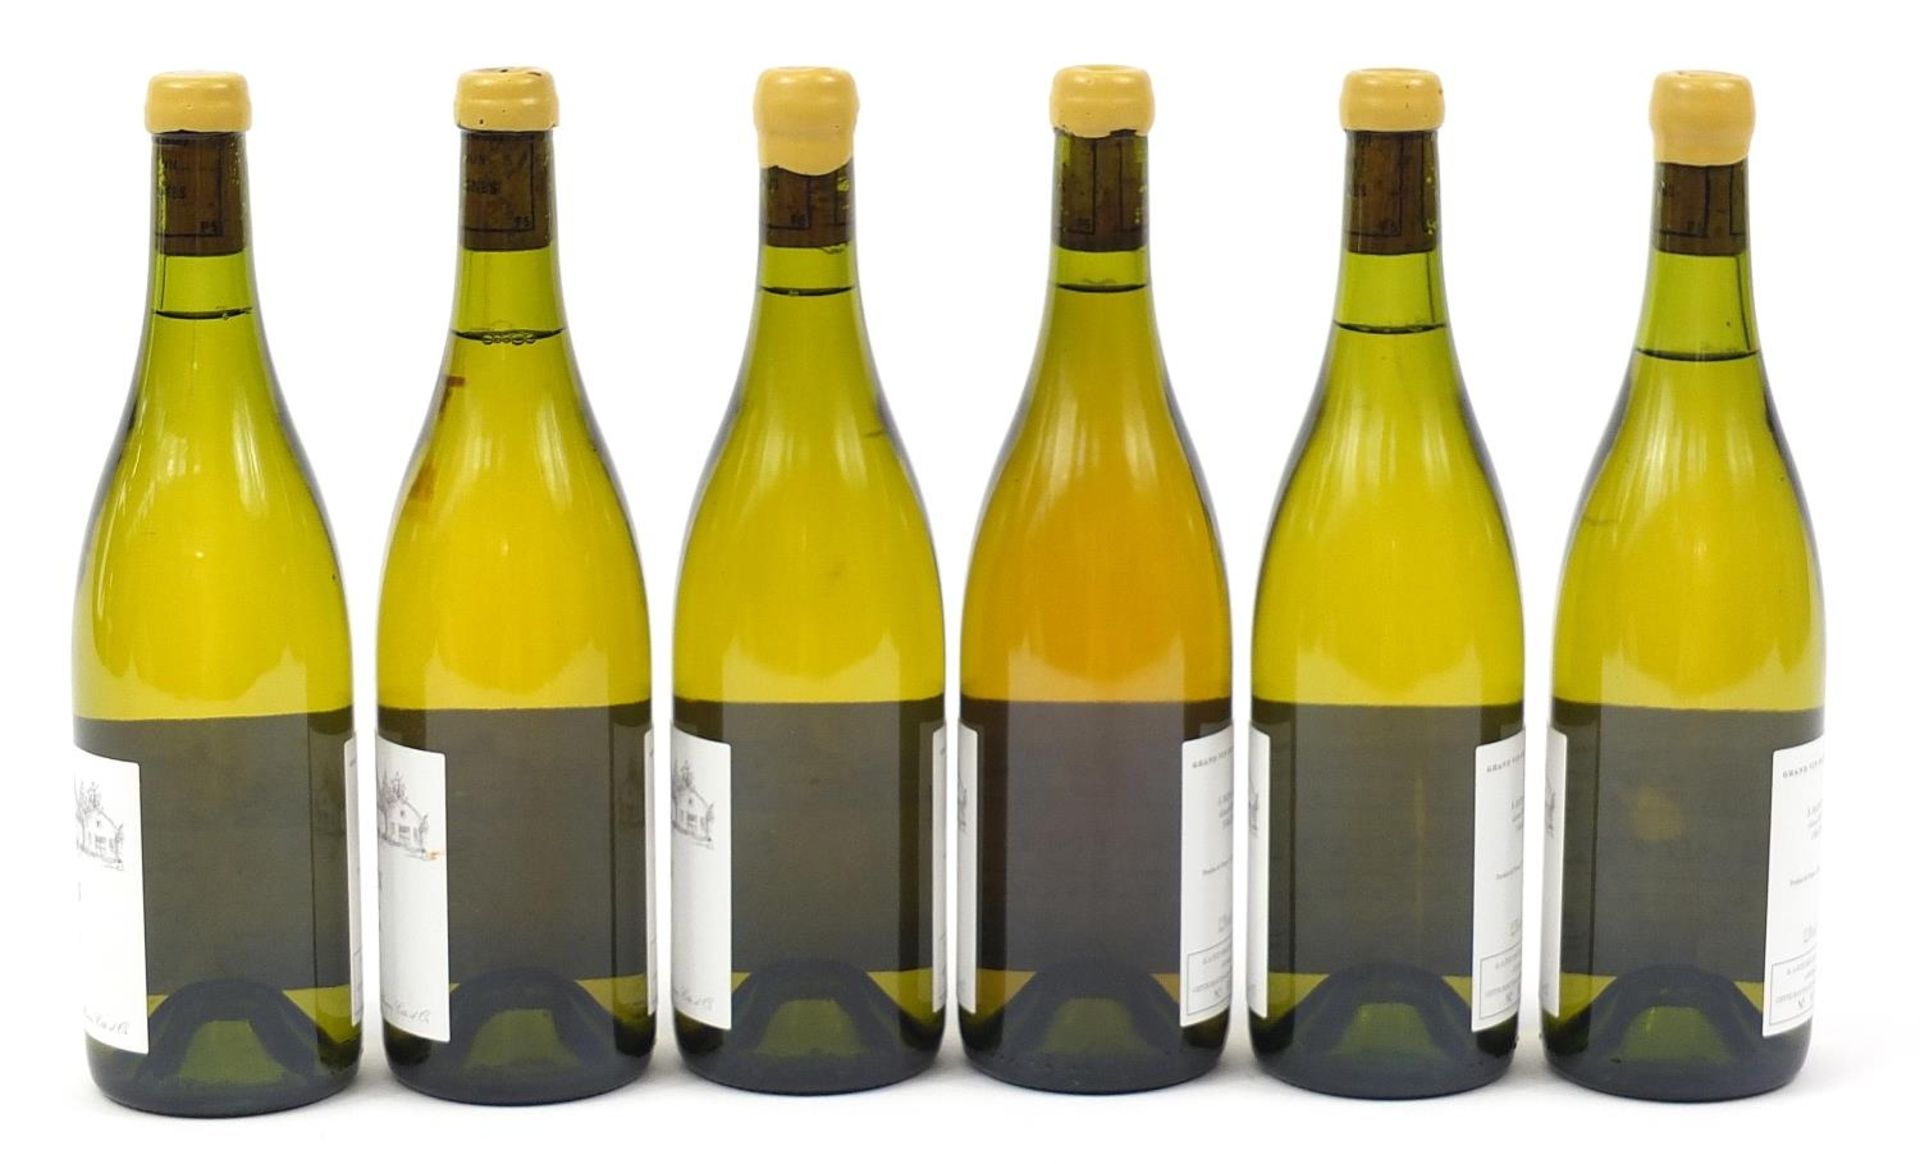 Six bottles of 2007 Domaine Potel Saint Romain Blanc Vieille Vignes - Image 2 of 2